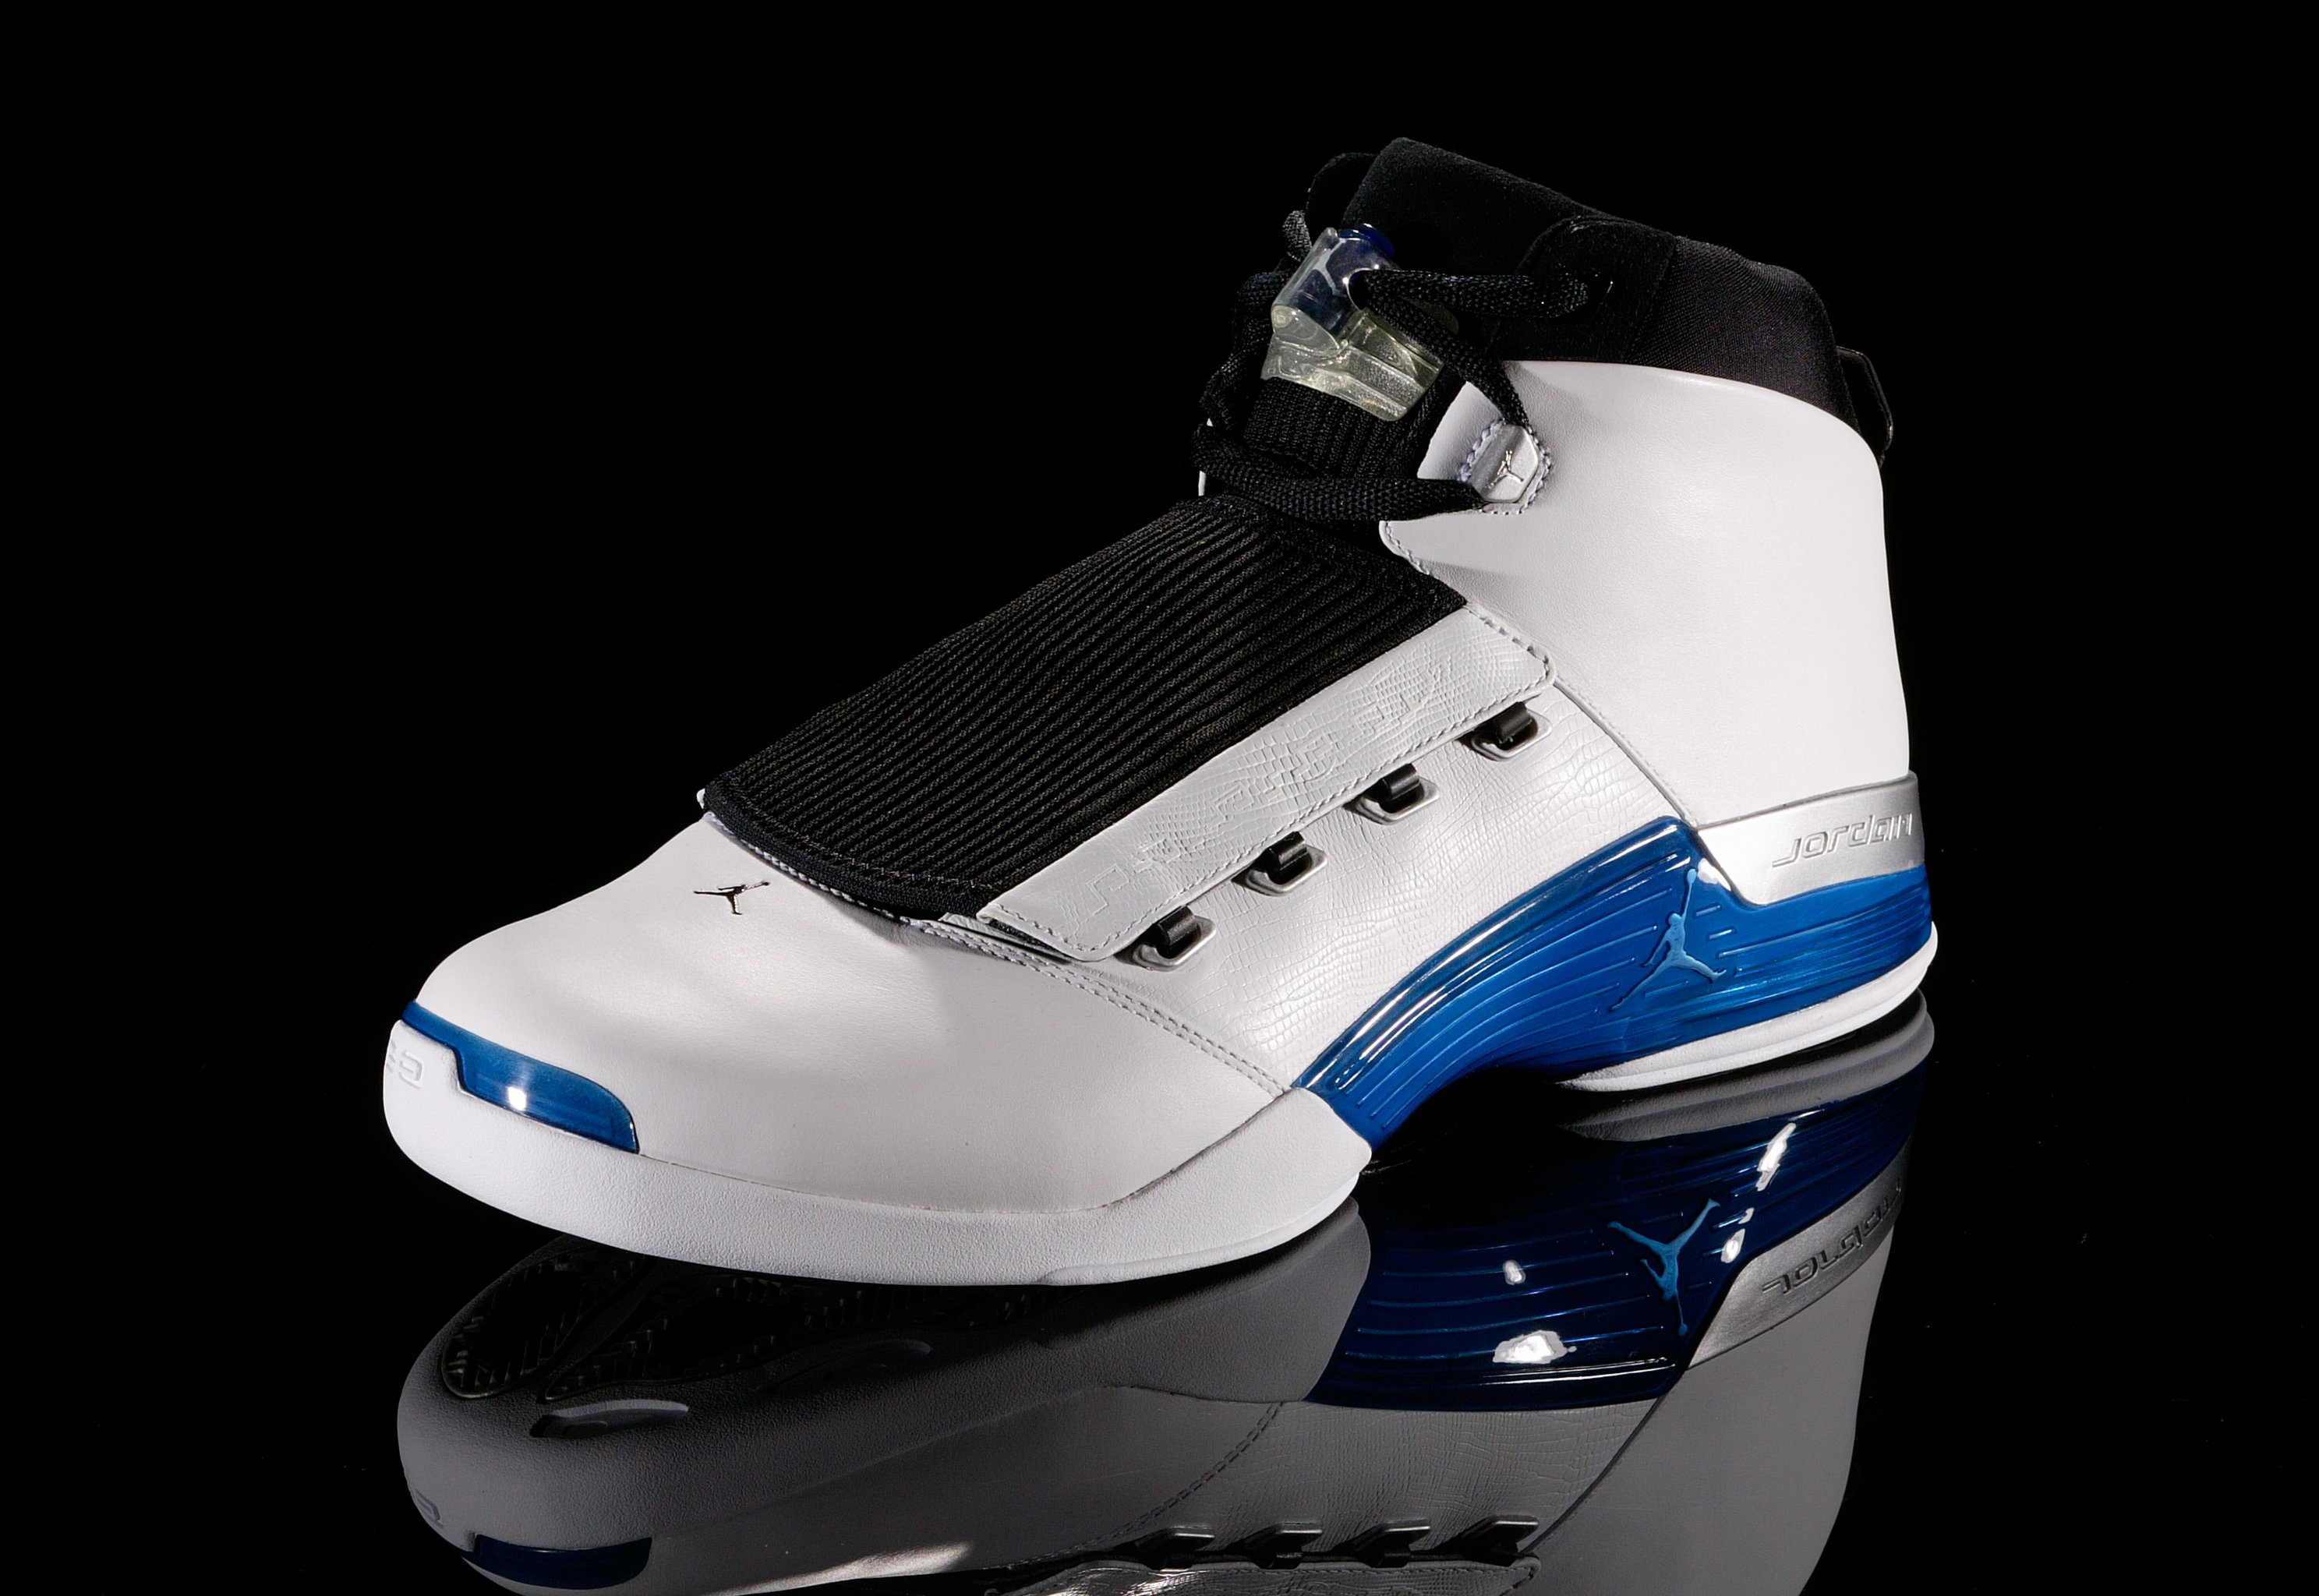 B/R Kicks: Revisiting Kobe Bryant's Signature Sneakers